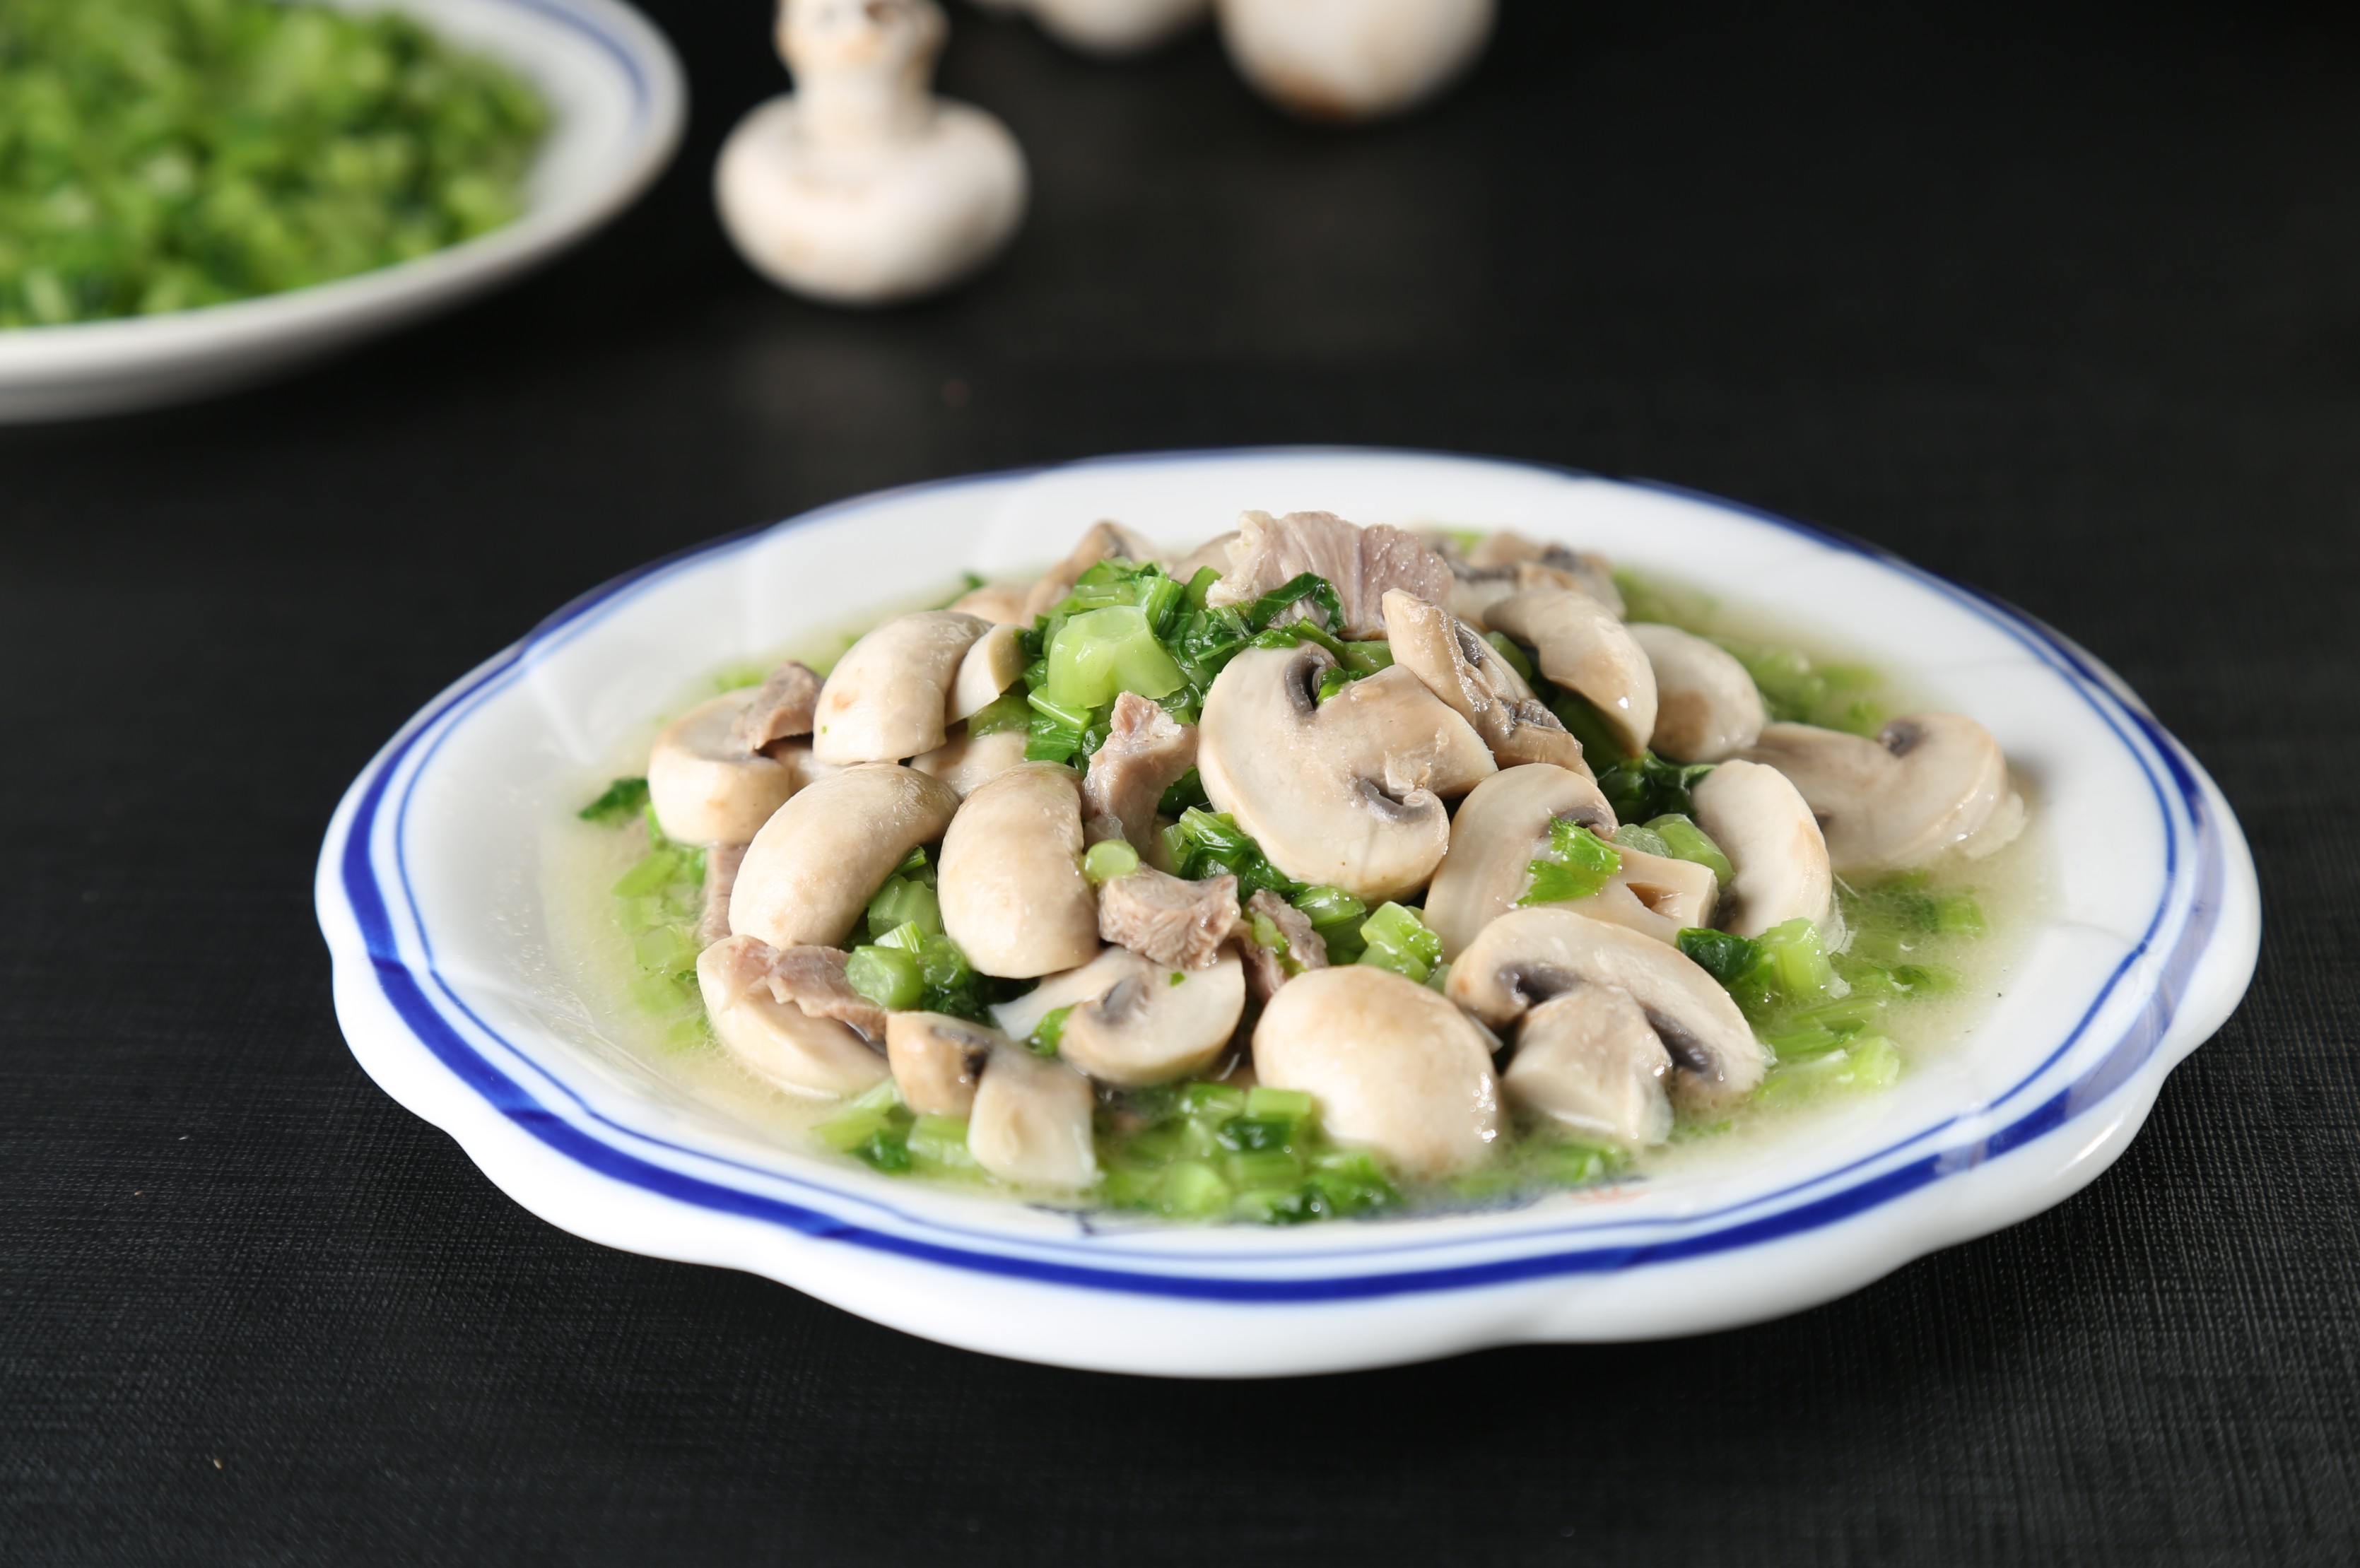 蘑菇炖白菜,蘑菇炖白菜的家常做法 - 美食杰蘑菇炖白菜做法大全